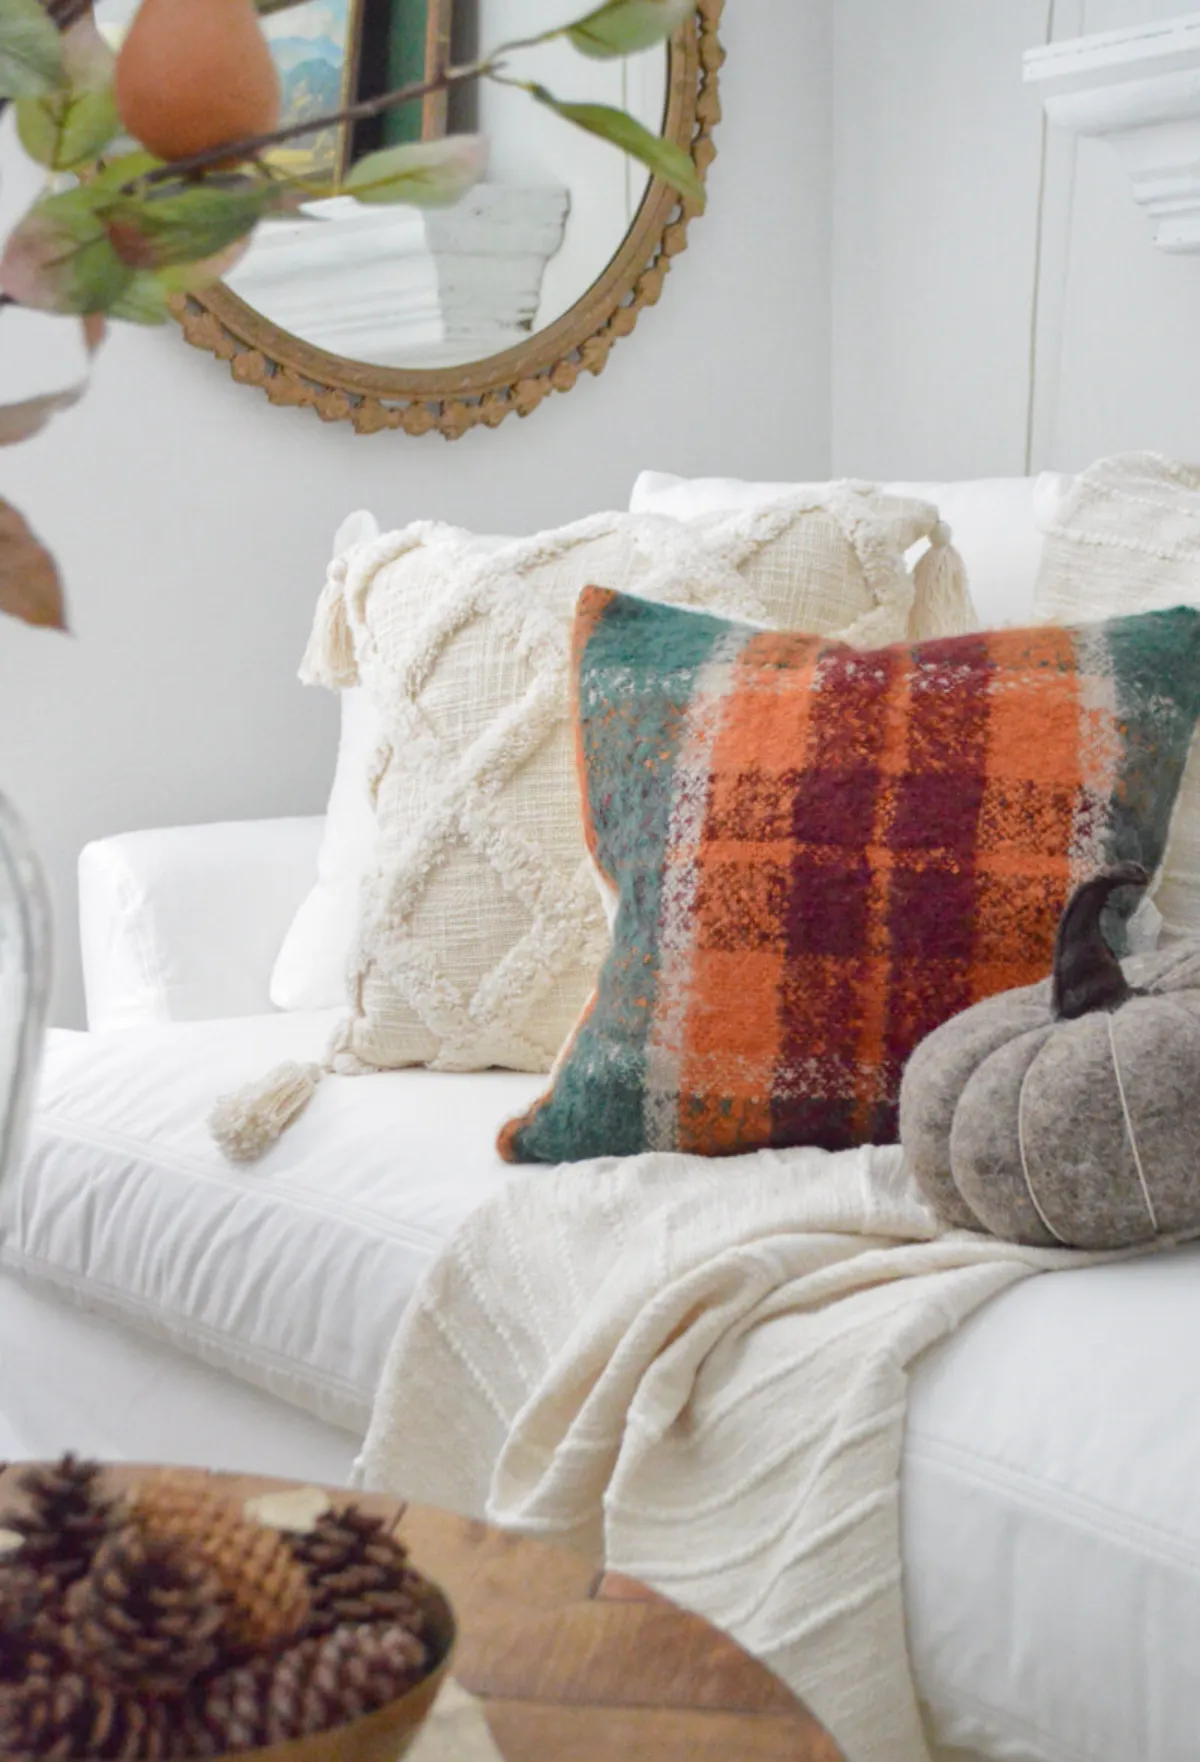 herbstdeko wohnzimmer textilien pastellfarben kissenbezug karriert